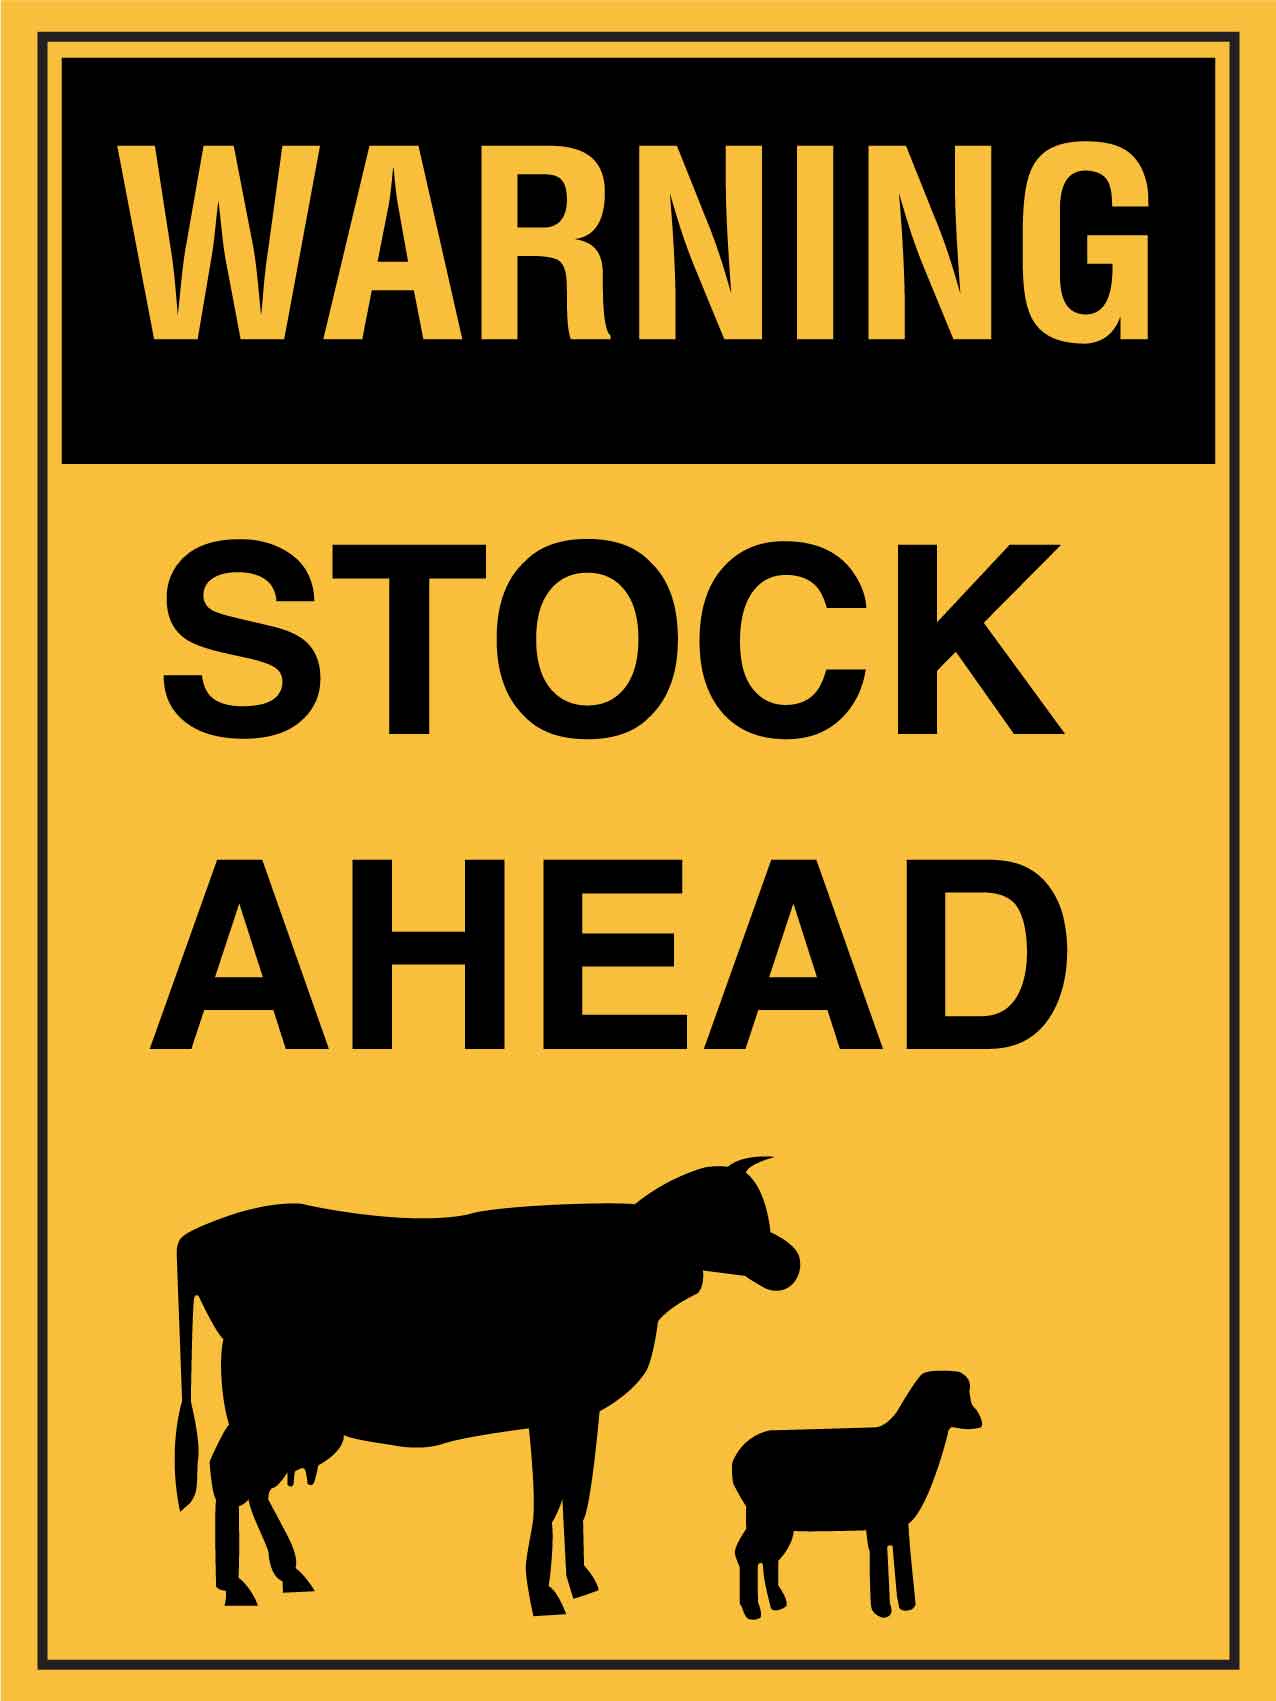 Warning Stock Ahead Sign